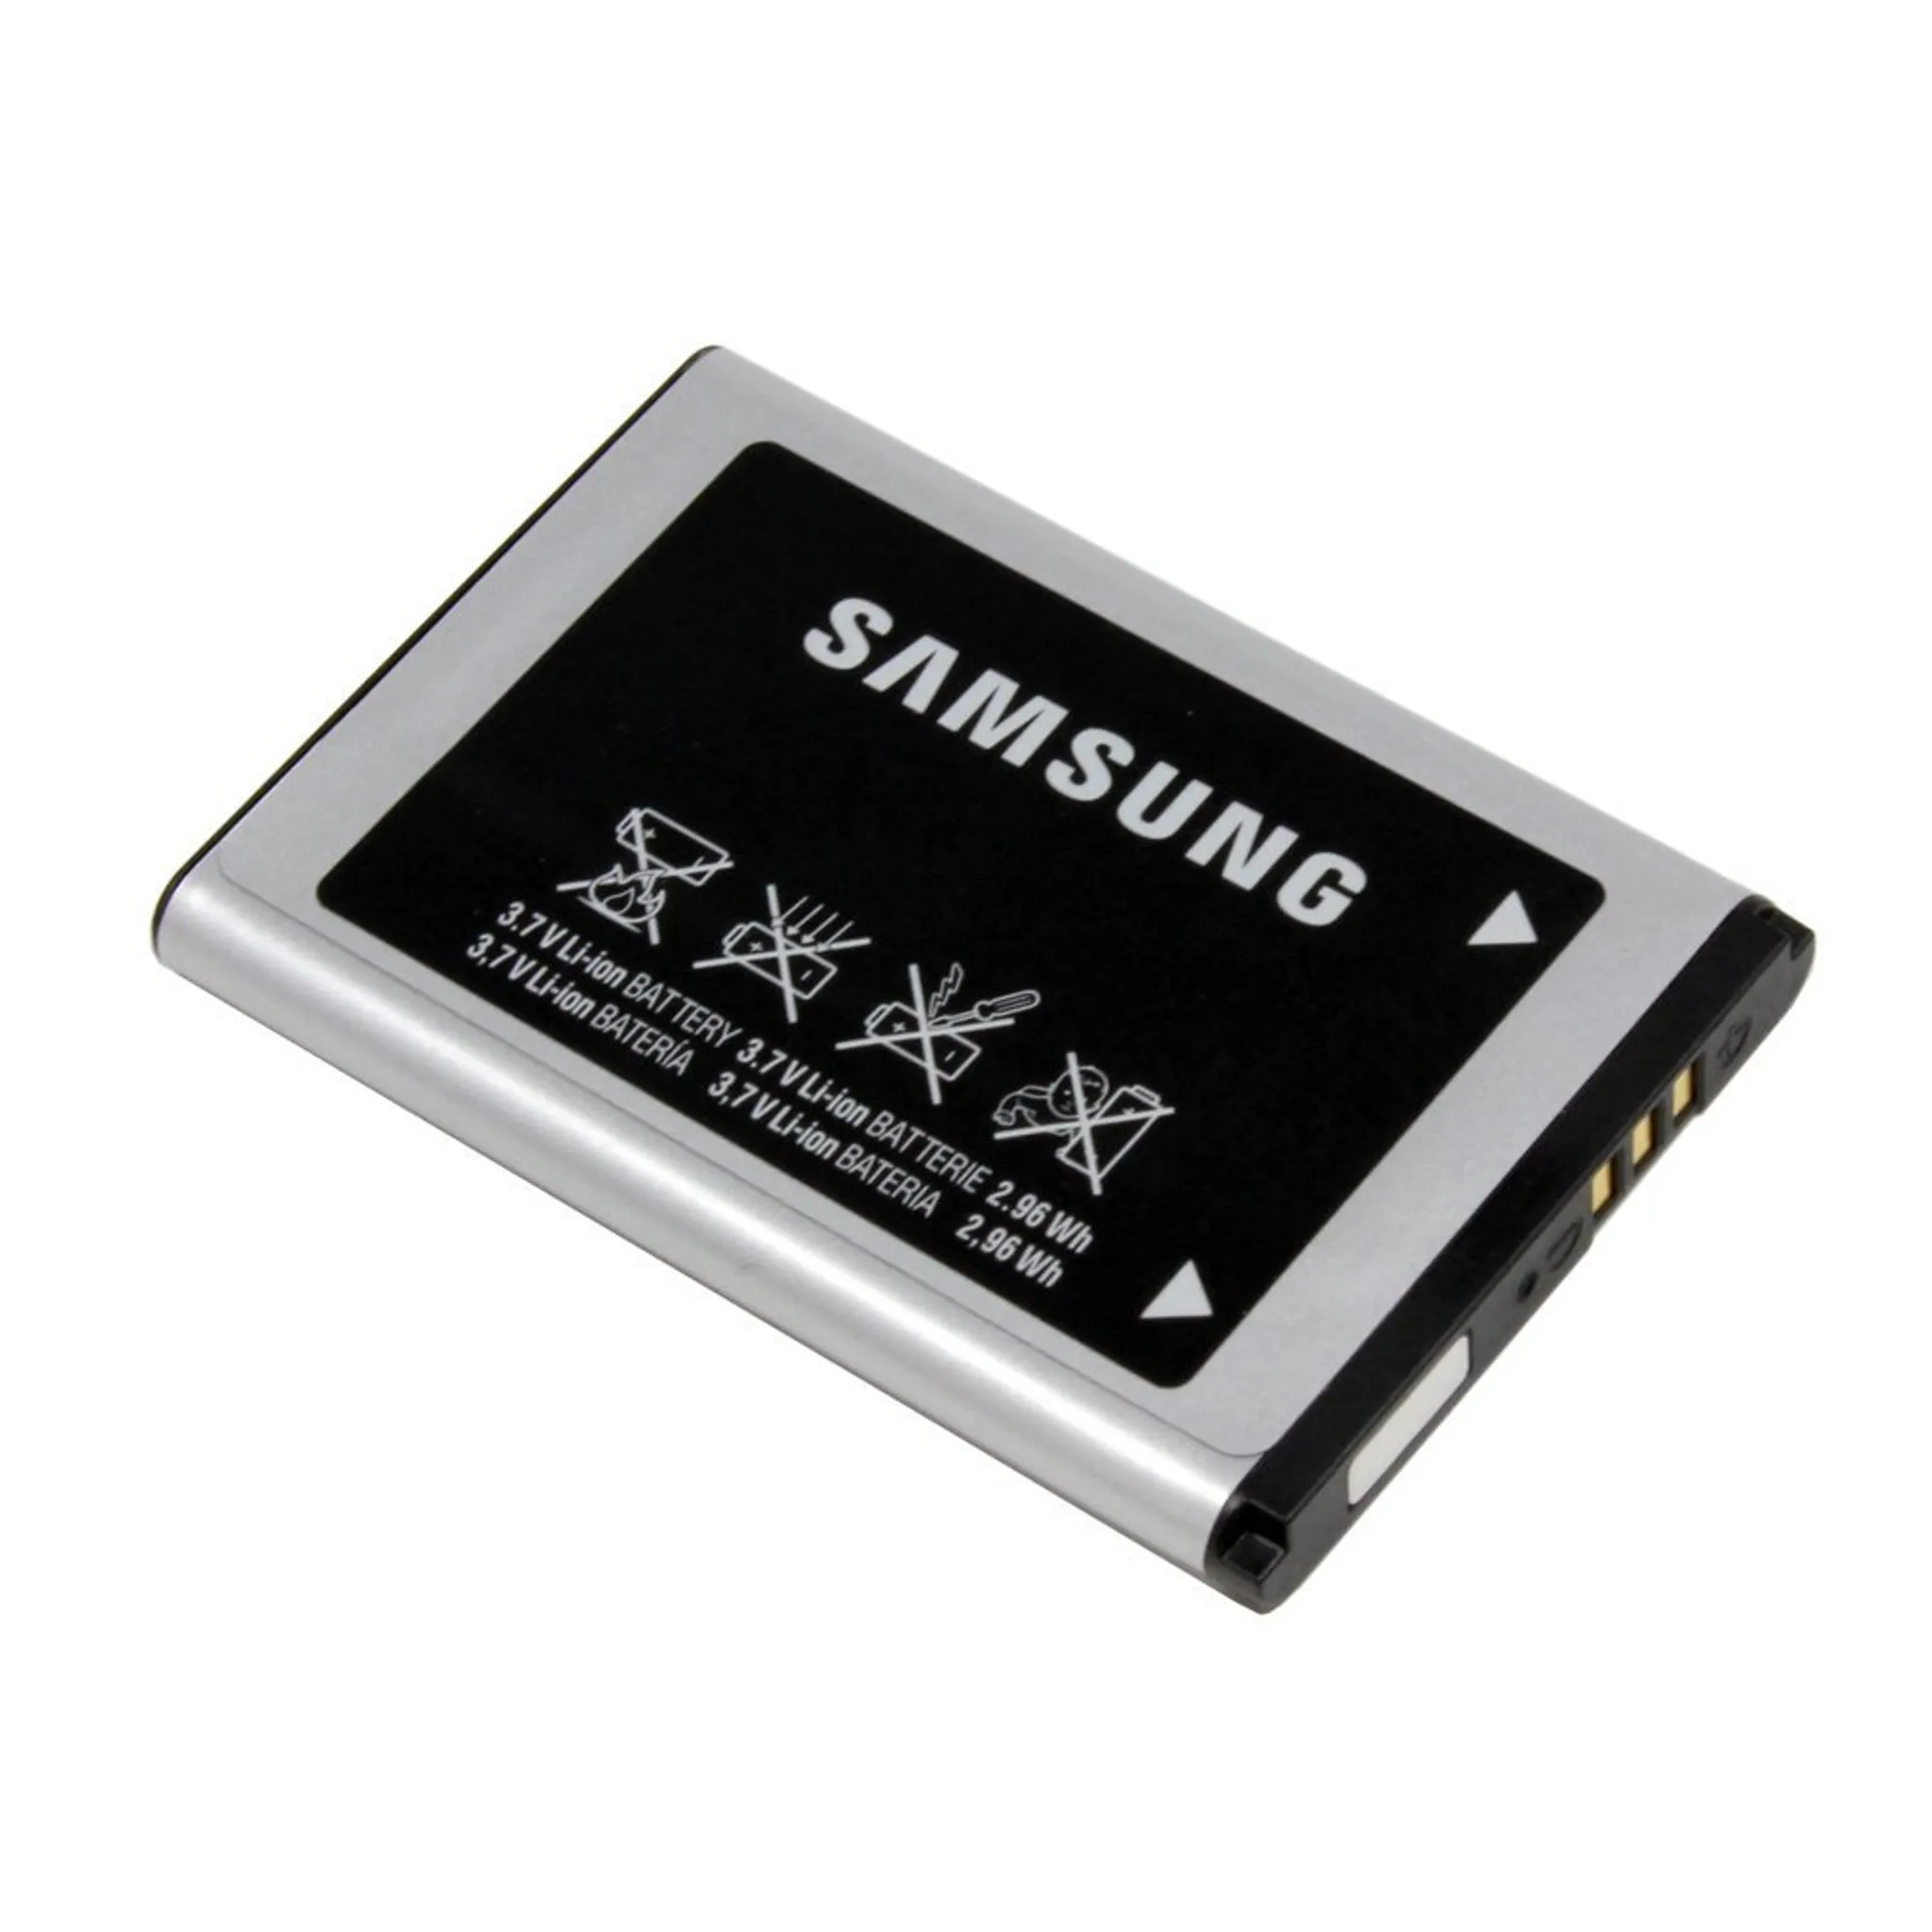 Новые аккумуляторы самсунг. Аккумулятор Samsung x200 (ab463446bu) (c3010/e1232/e1070/e1080) (800mah). Samsung ab463446bu. Samsung АКБ 800mah. Samsung gt-e1200 аккумулятор.